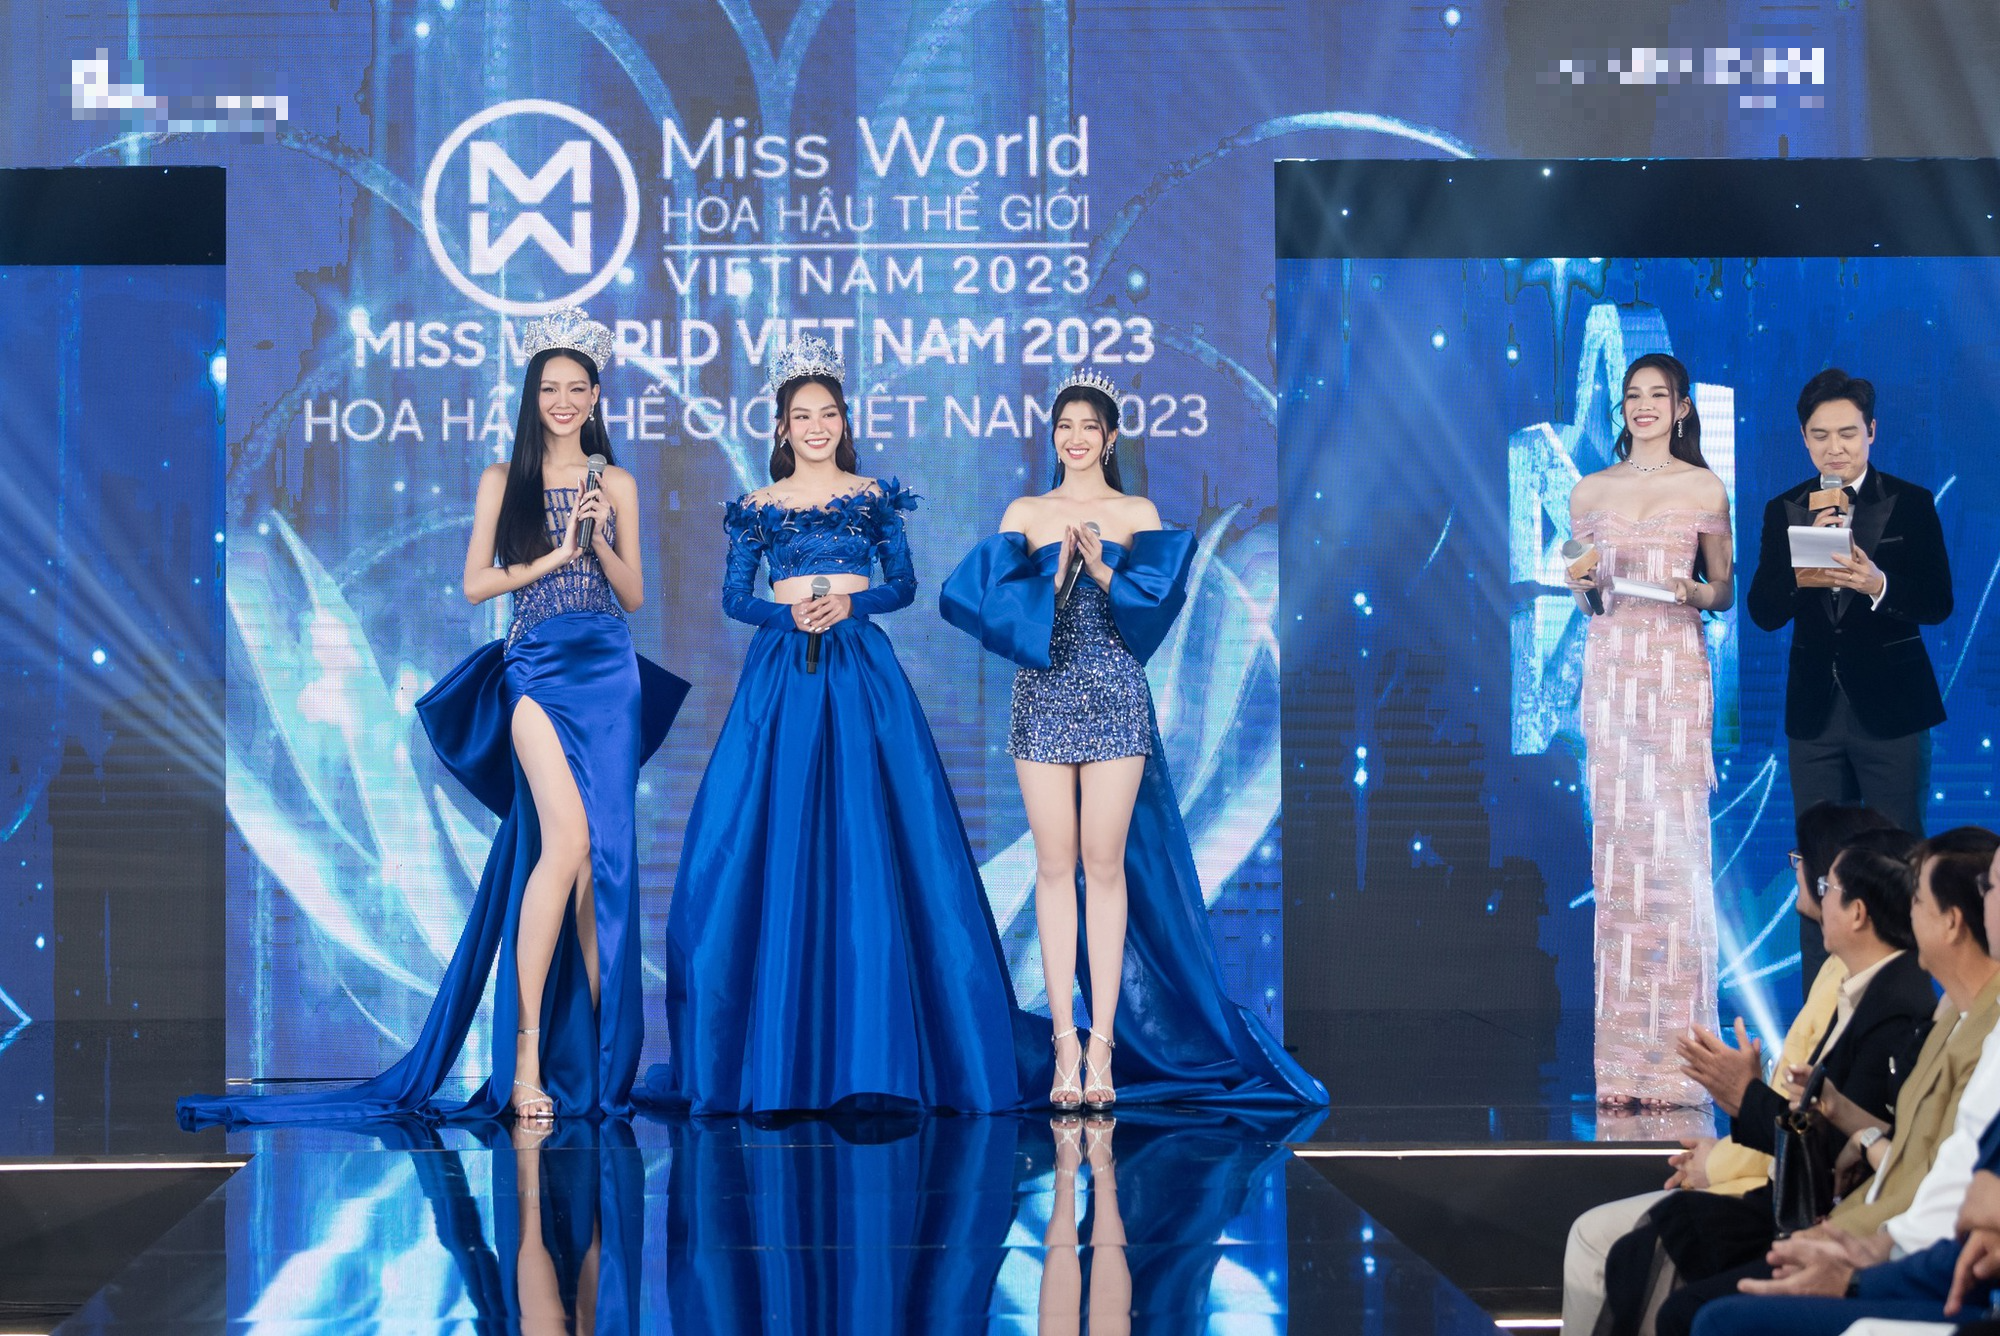 Hoa hậu Bảo Ngọc bật khóc khi nhắc đến loạt ồn ào của Hoa hậu Mai Phương sau đăng quang  - Ảnh 1.